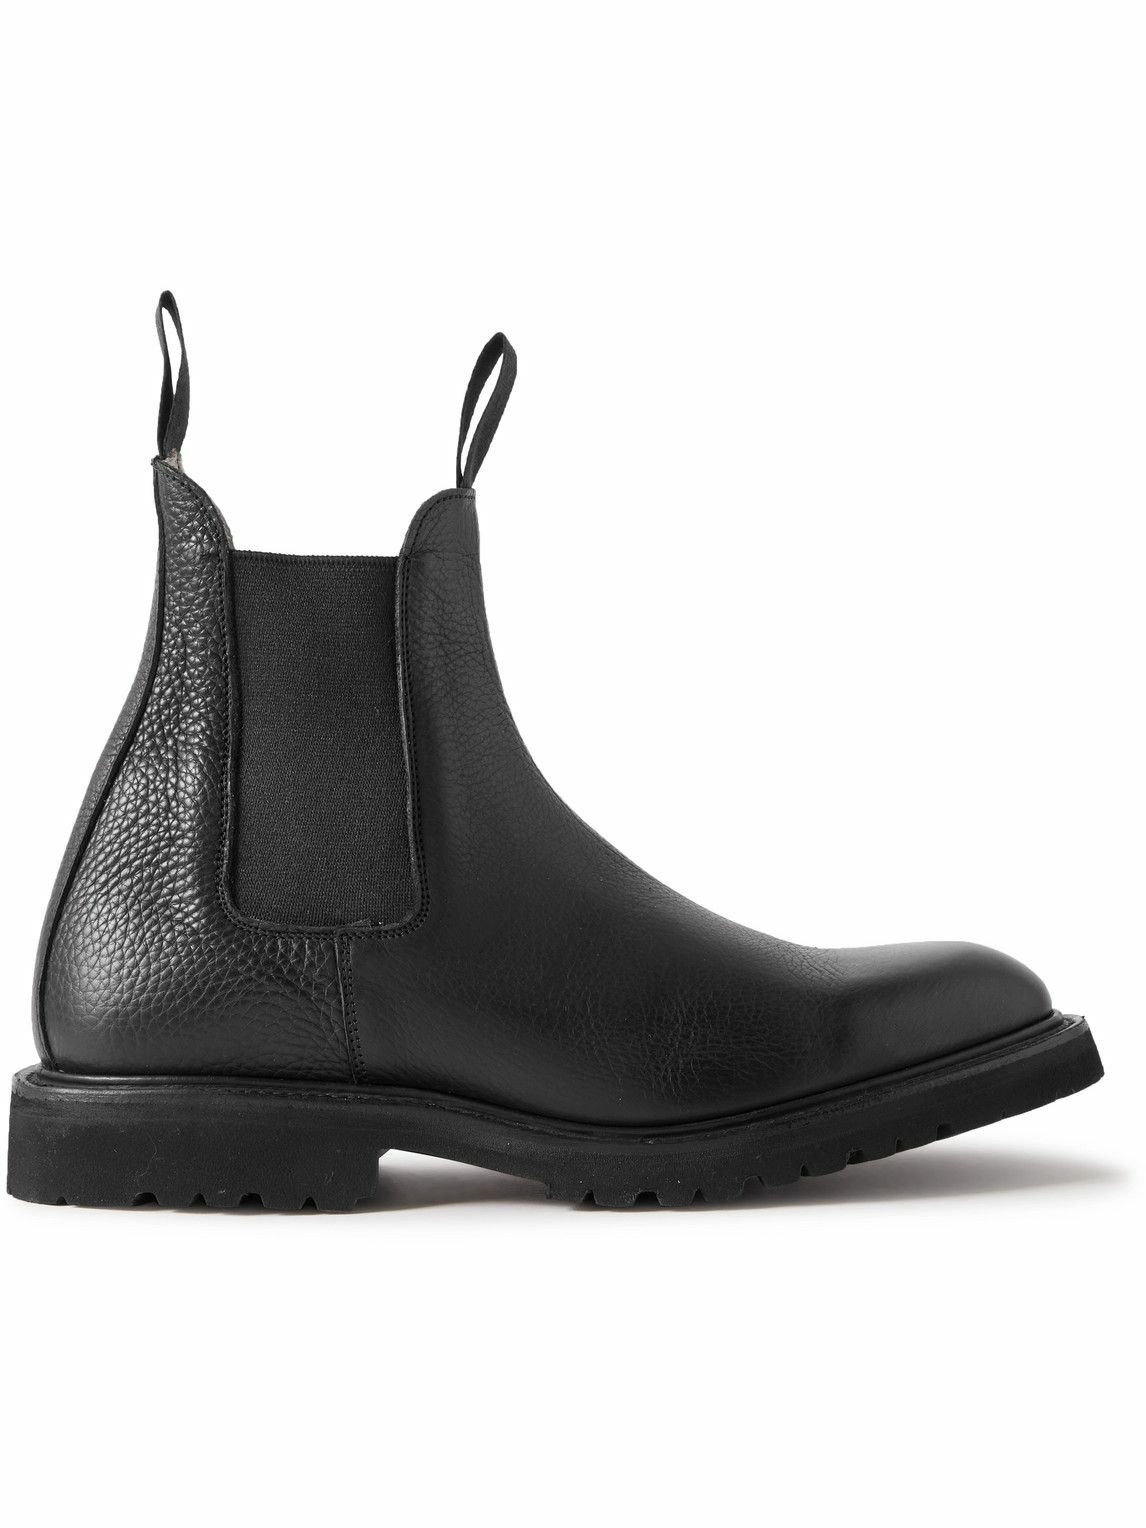 Photo: Tricker's - Gigio Full-Grain Leather Chelsea Boots - Black